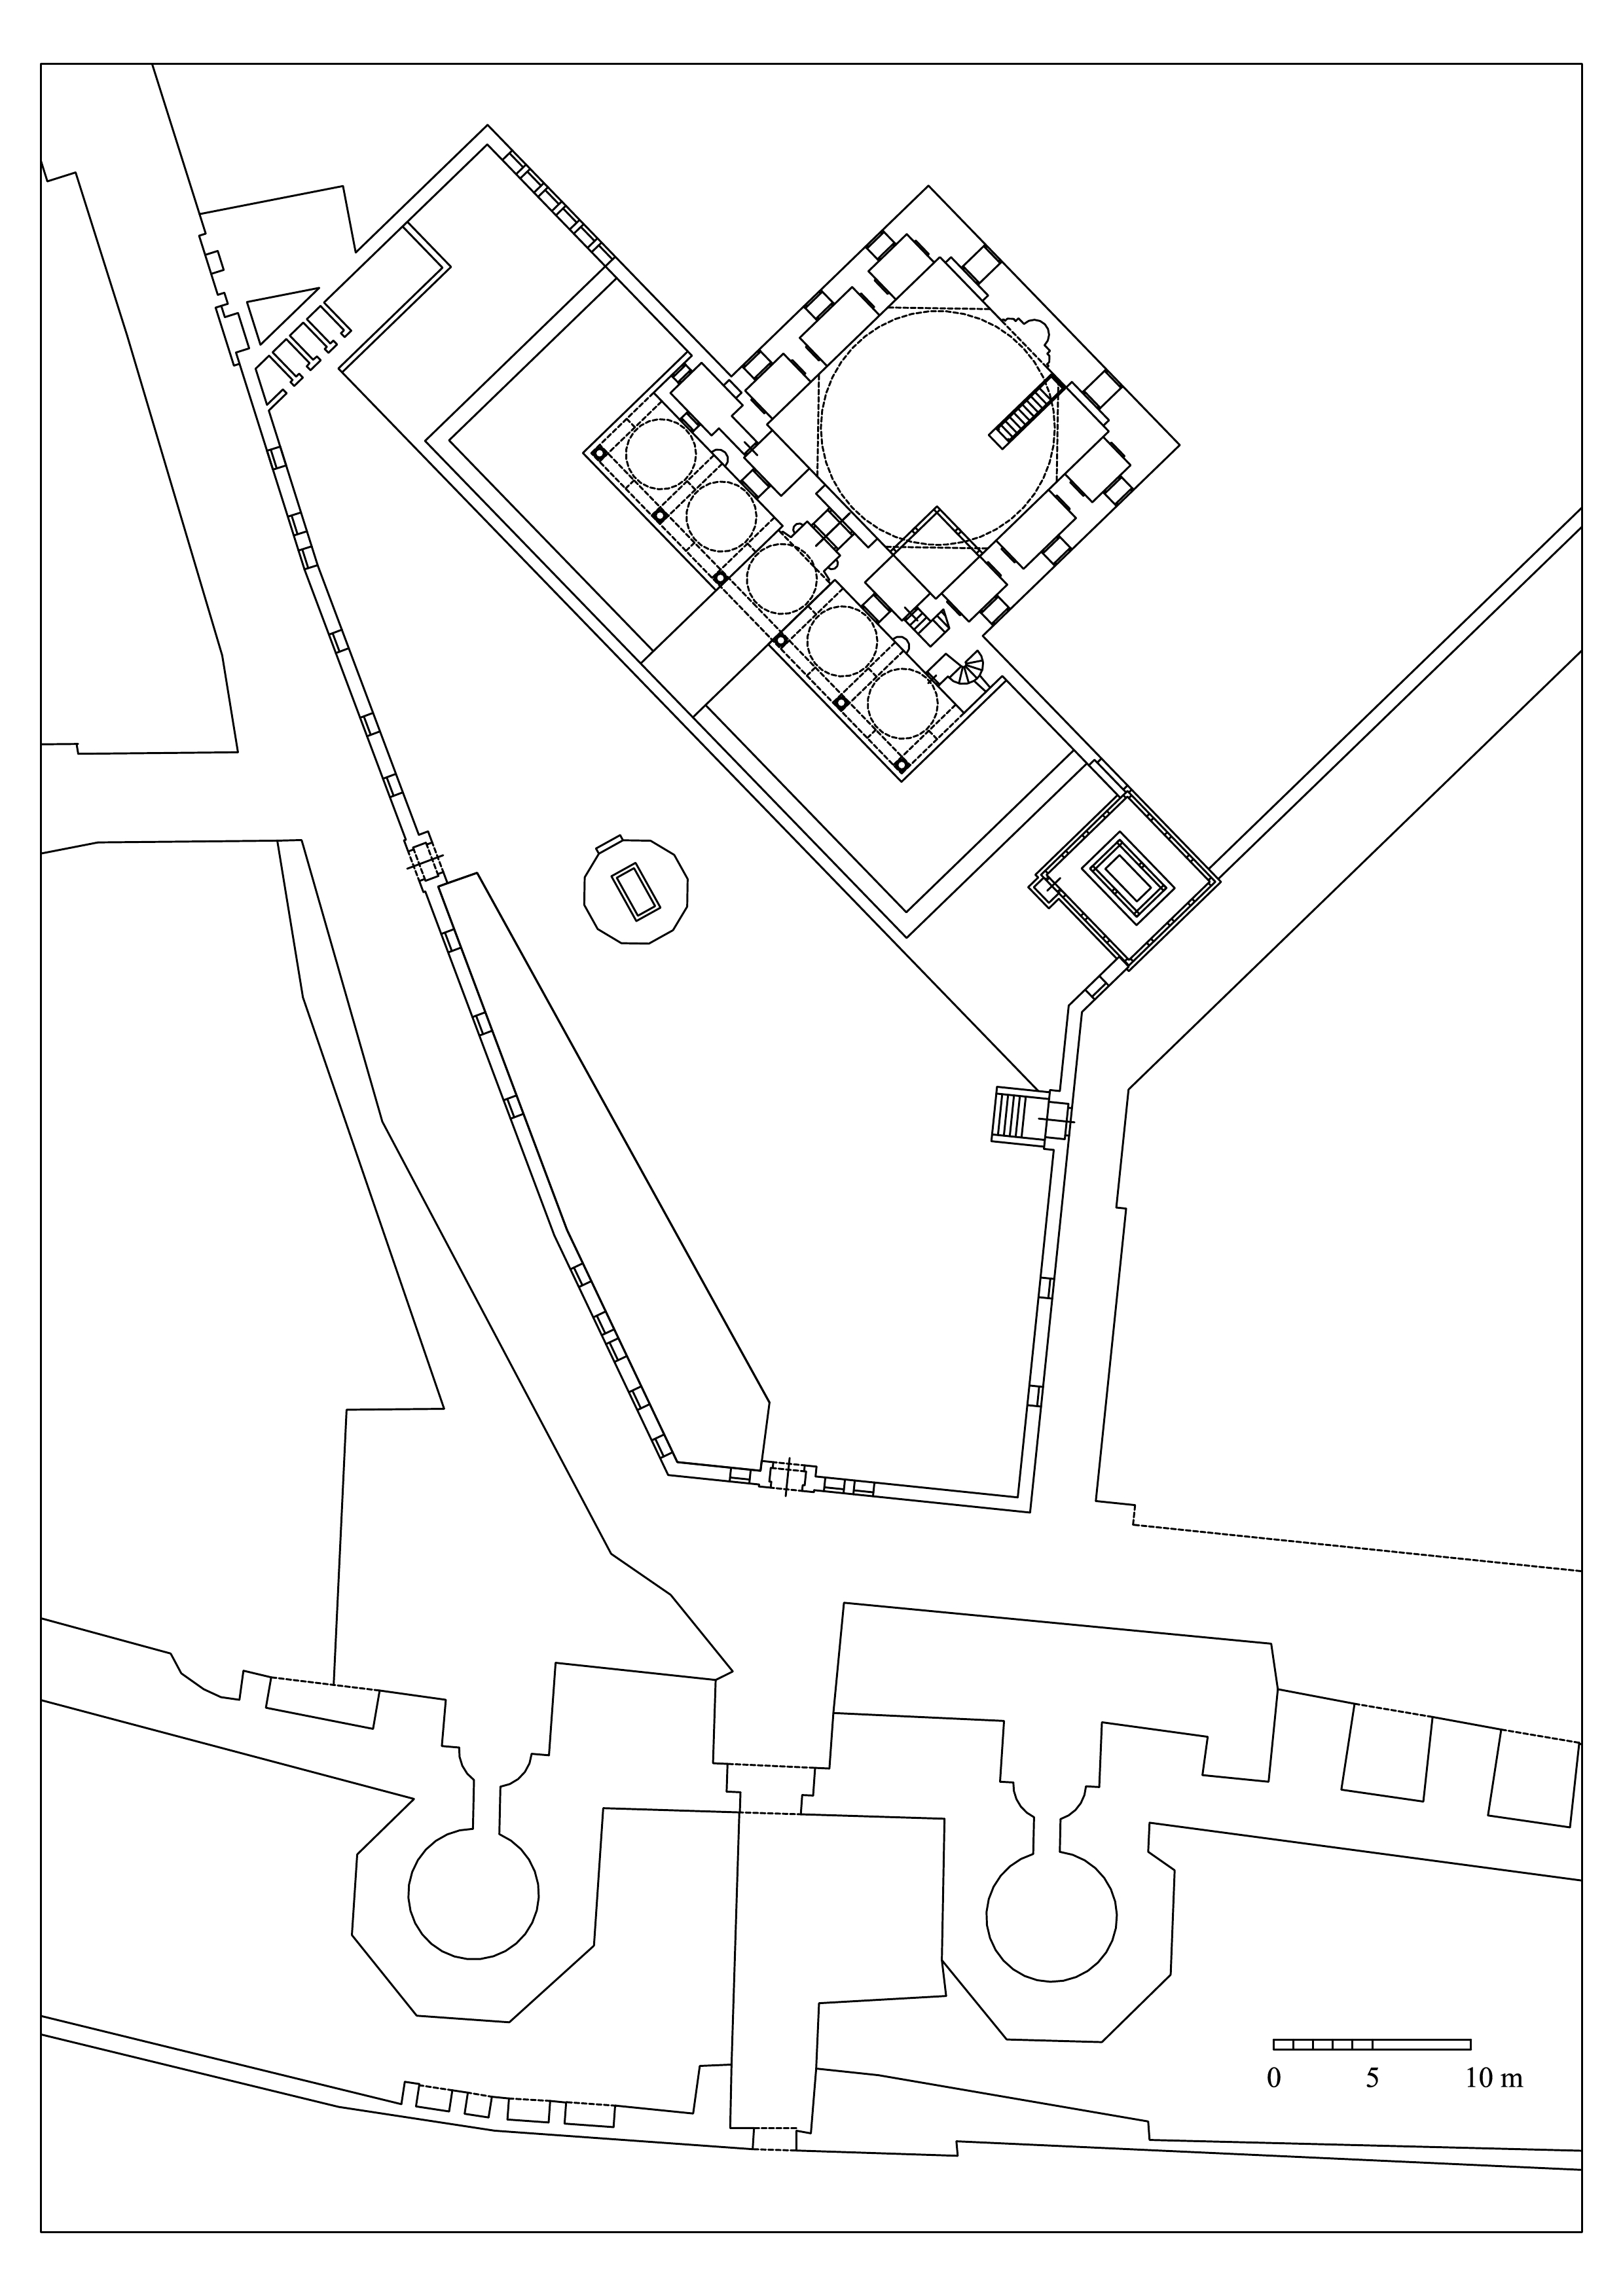 Floor plan of mosque and mausoleum